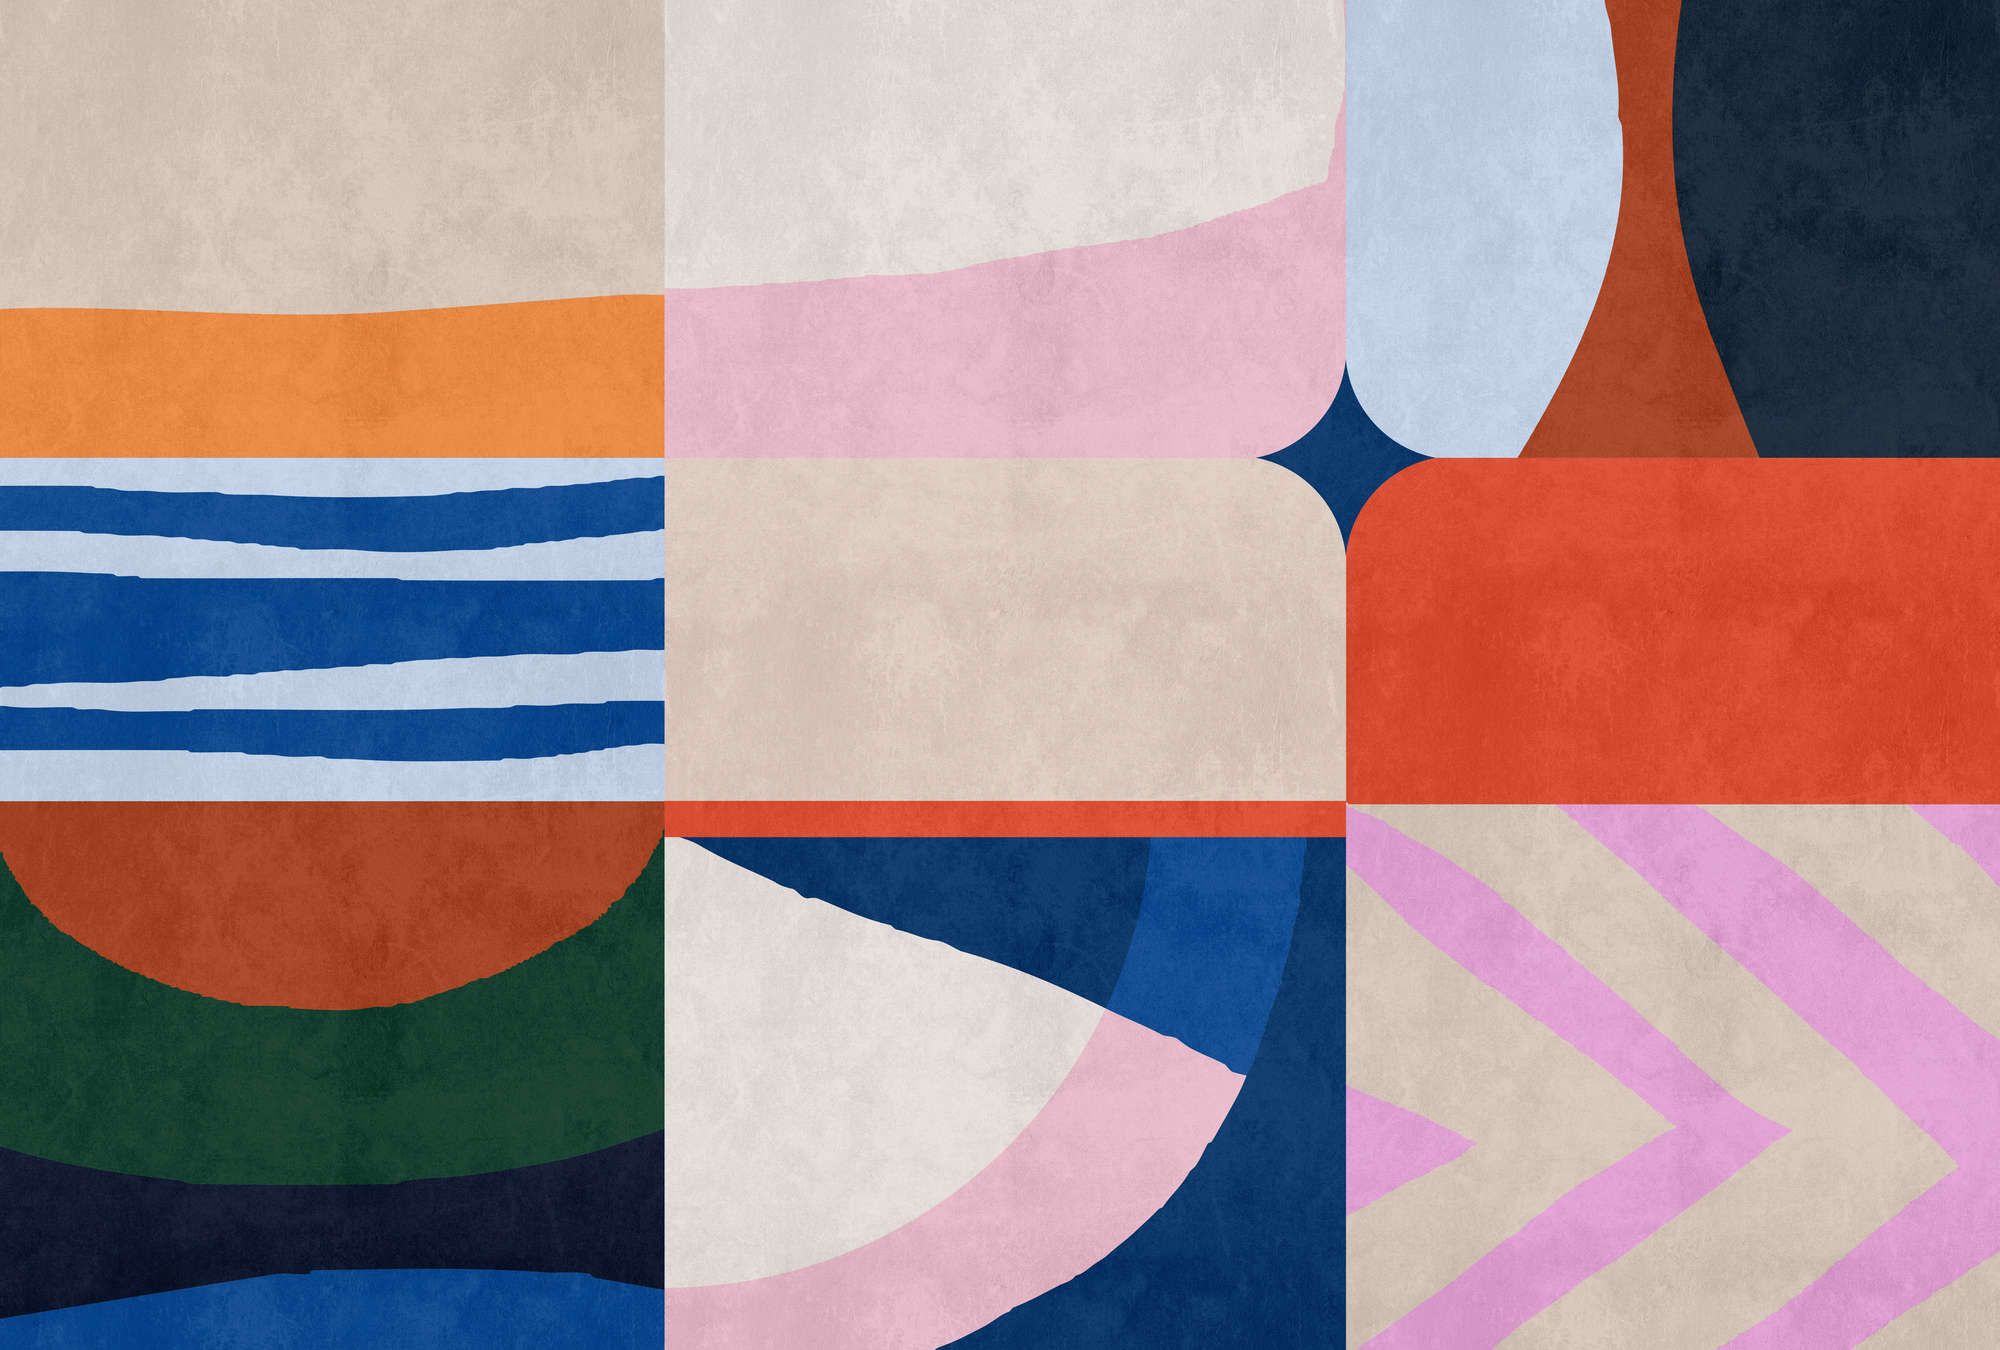             papier peint en papier panoramique »mañana« - design patchwork coloré avec structure d'enduit béton - intissé premium lisse et légèrement brillant
        